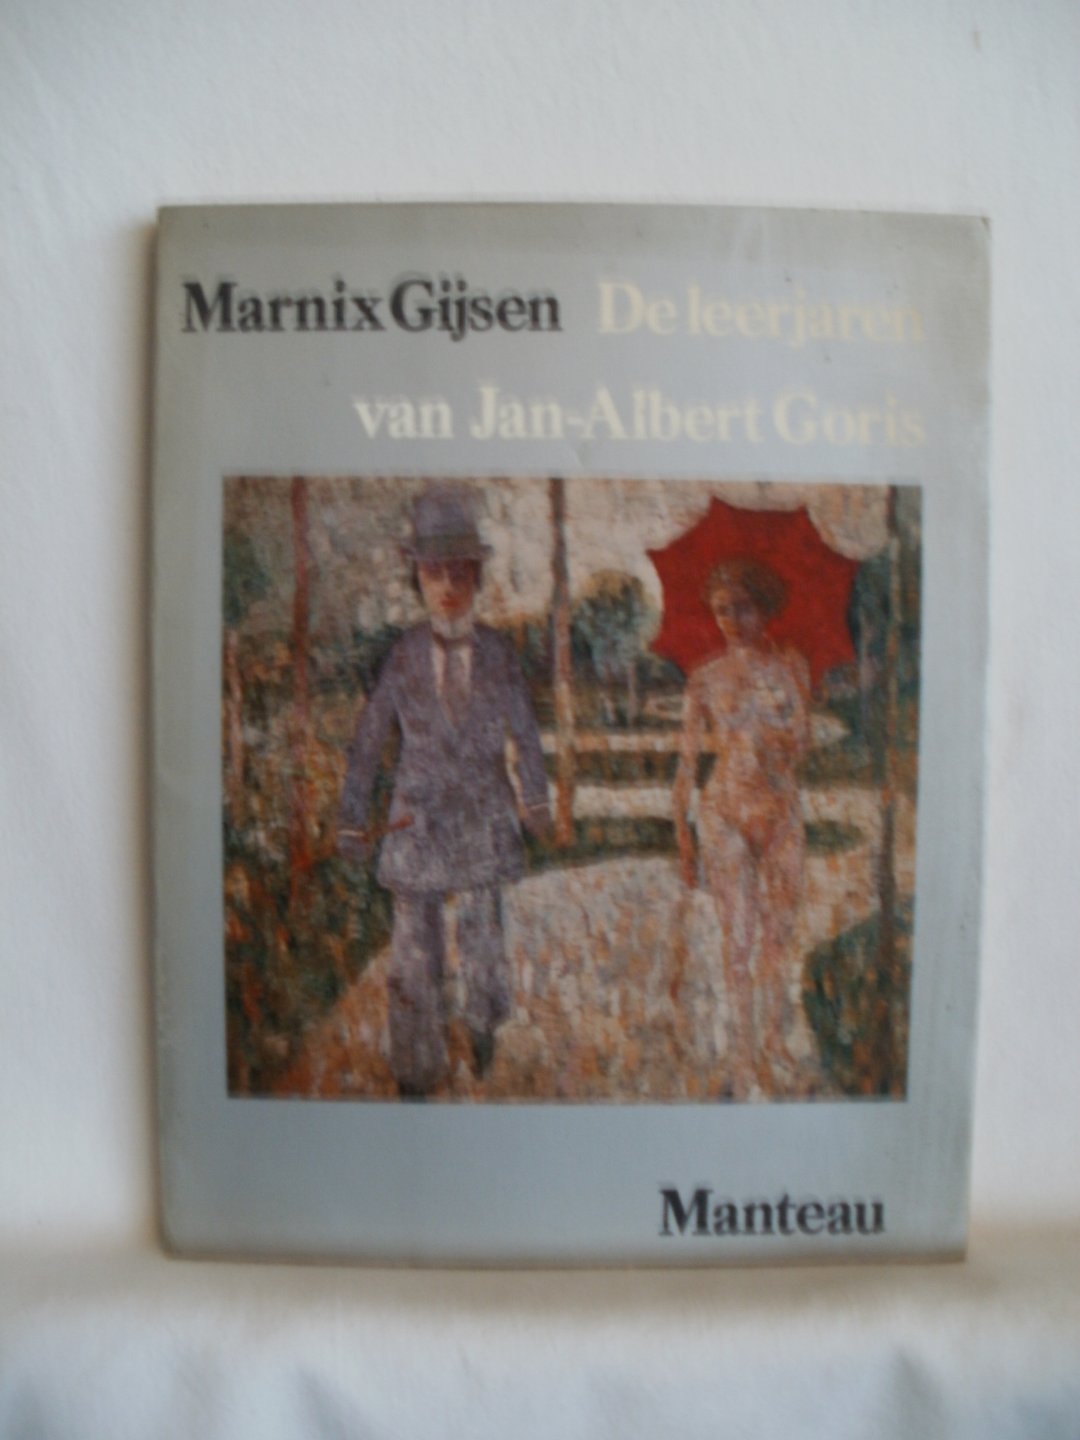 Gijsen, Marnix - De leerjaren van Jan-Albert Goris